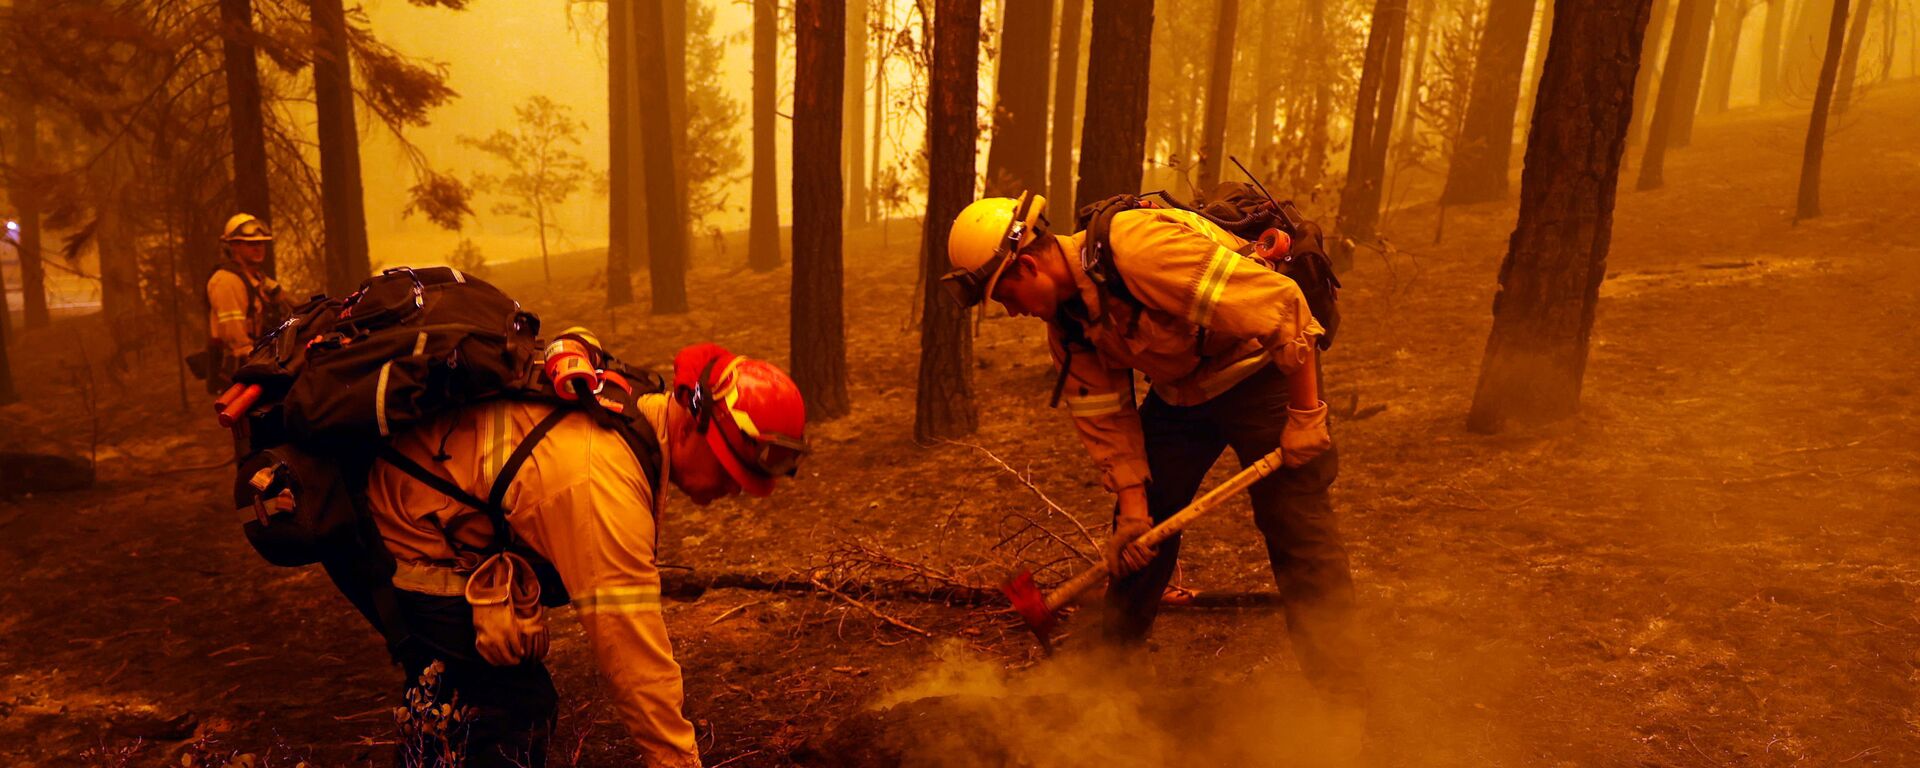 ABD'nin Kaliforniya eyaletinde son yılların en büyük orman yangınları devam ediyor, en az 8 kişinin yangın sebebiyle kayıp olduğu bildirildi. - Sputnik Türkiye, 1920, 07.08.2021